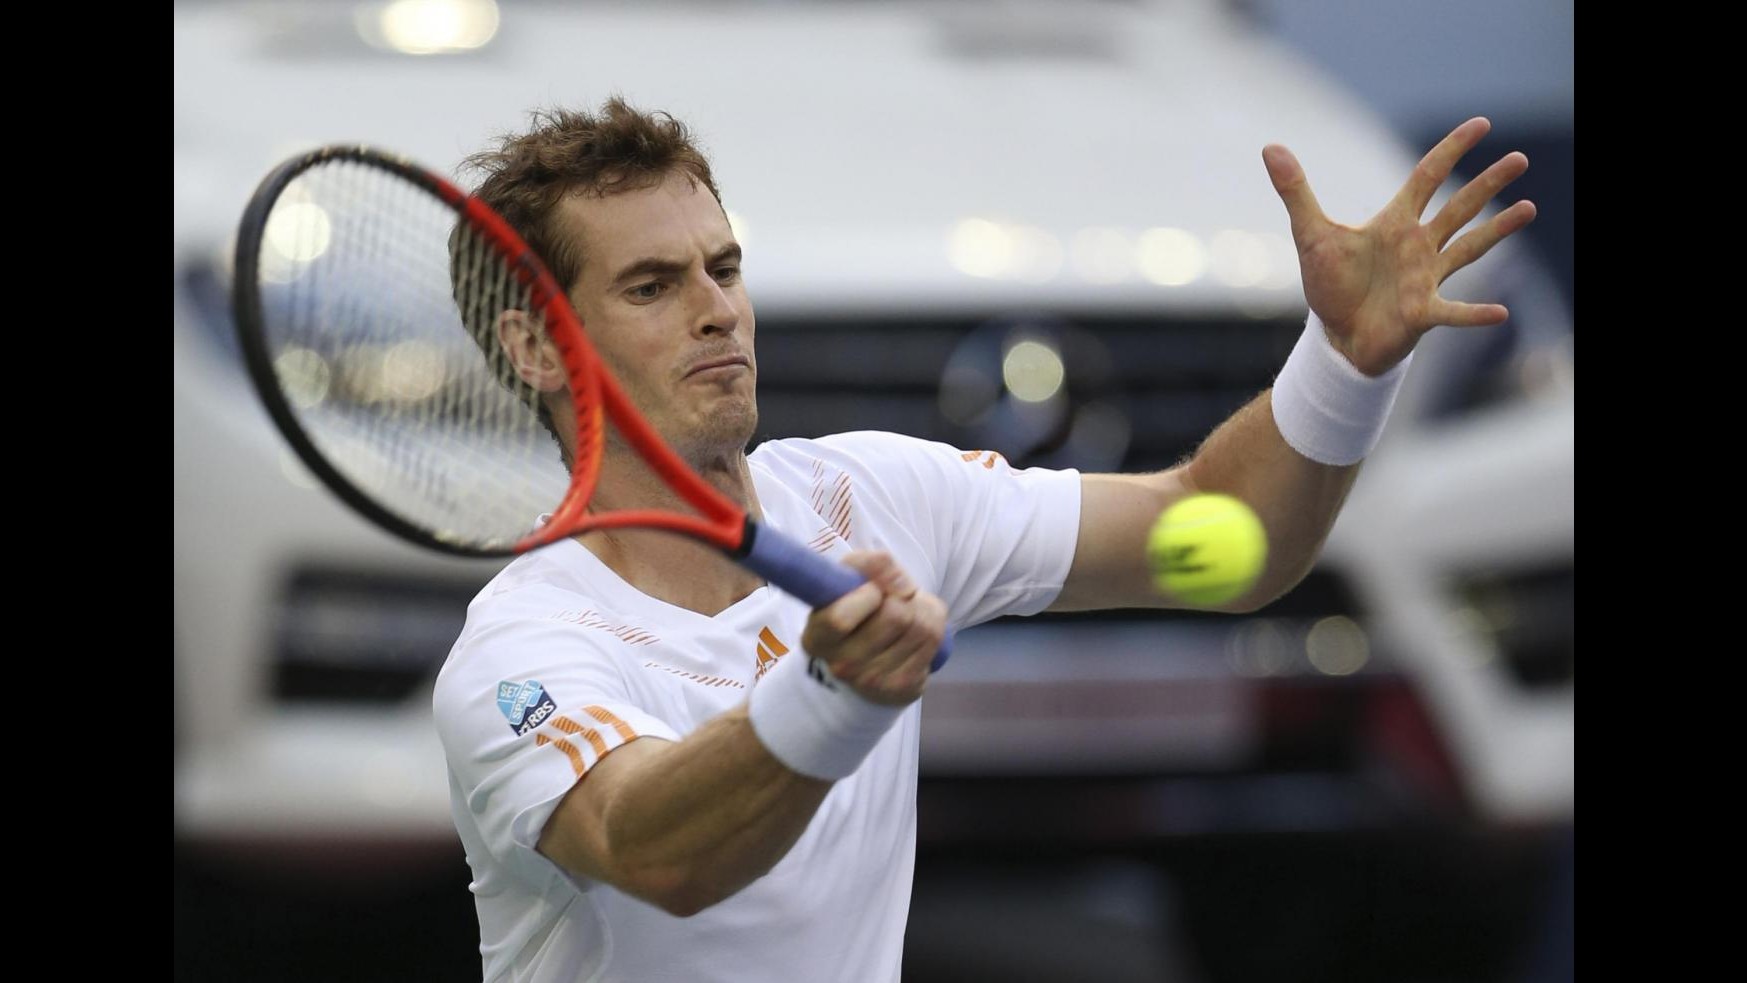 Tennis, Murray batte Federer e trova Djokovic in finale a Shanghai